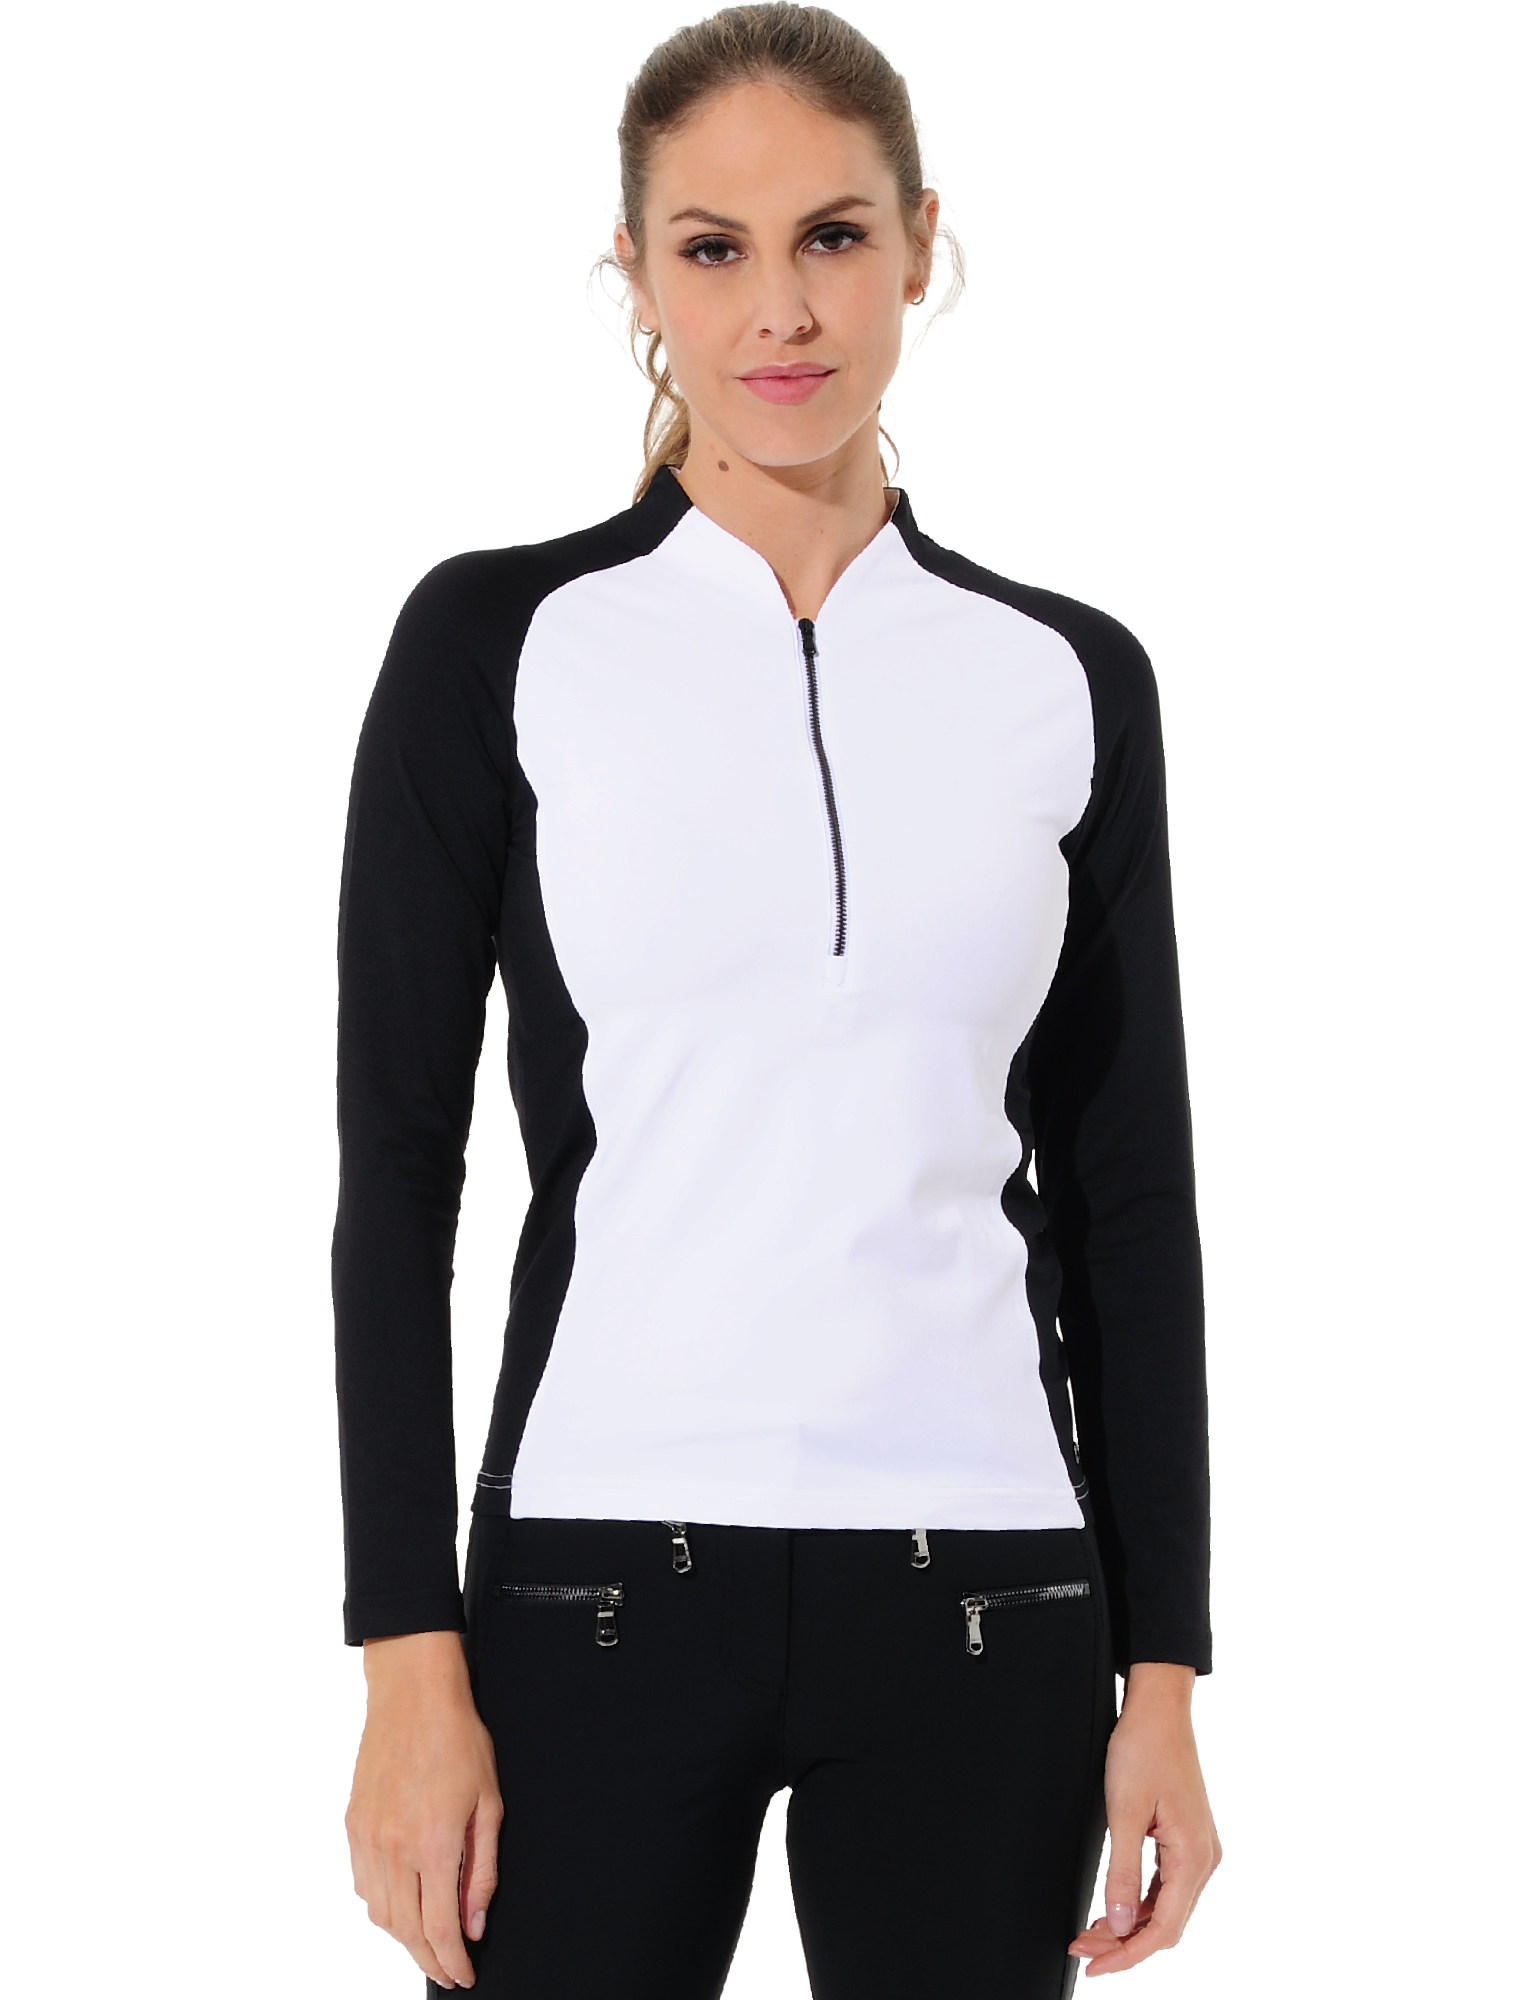 Jersey Zip Poloshirt white/black